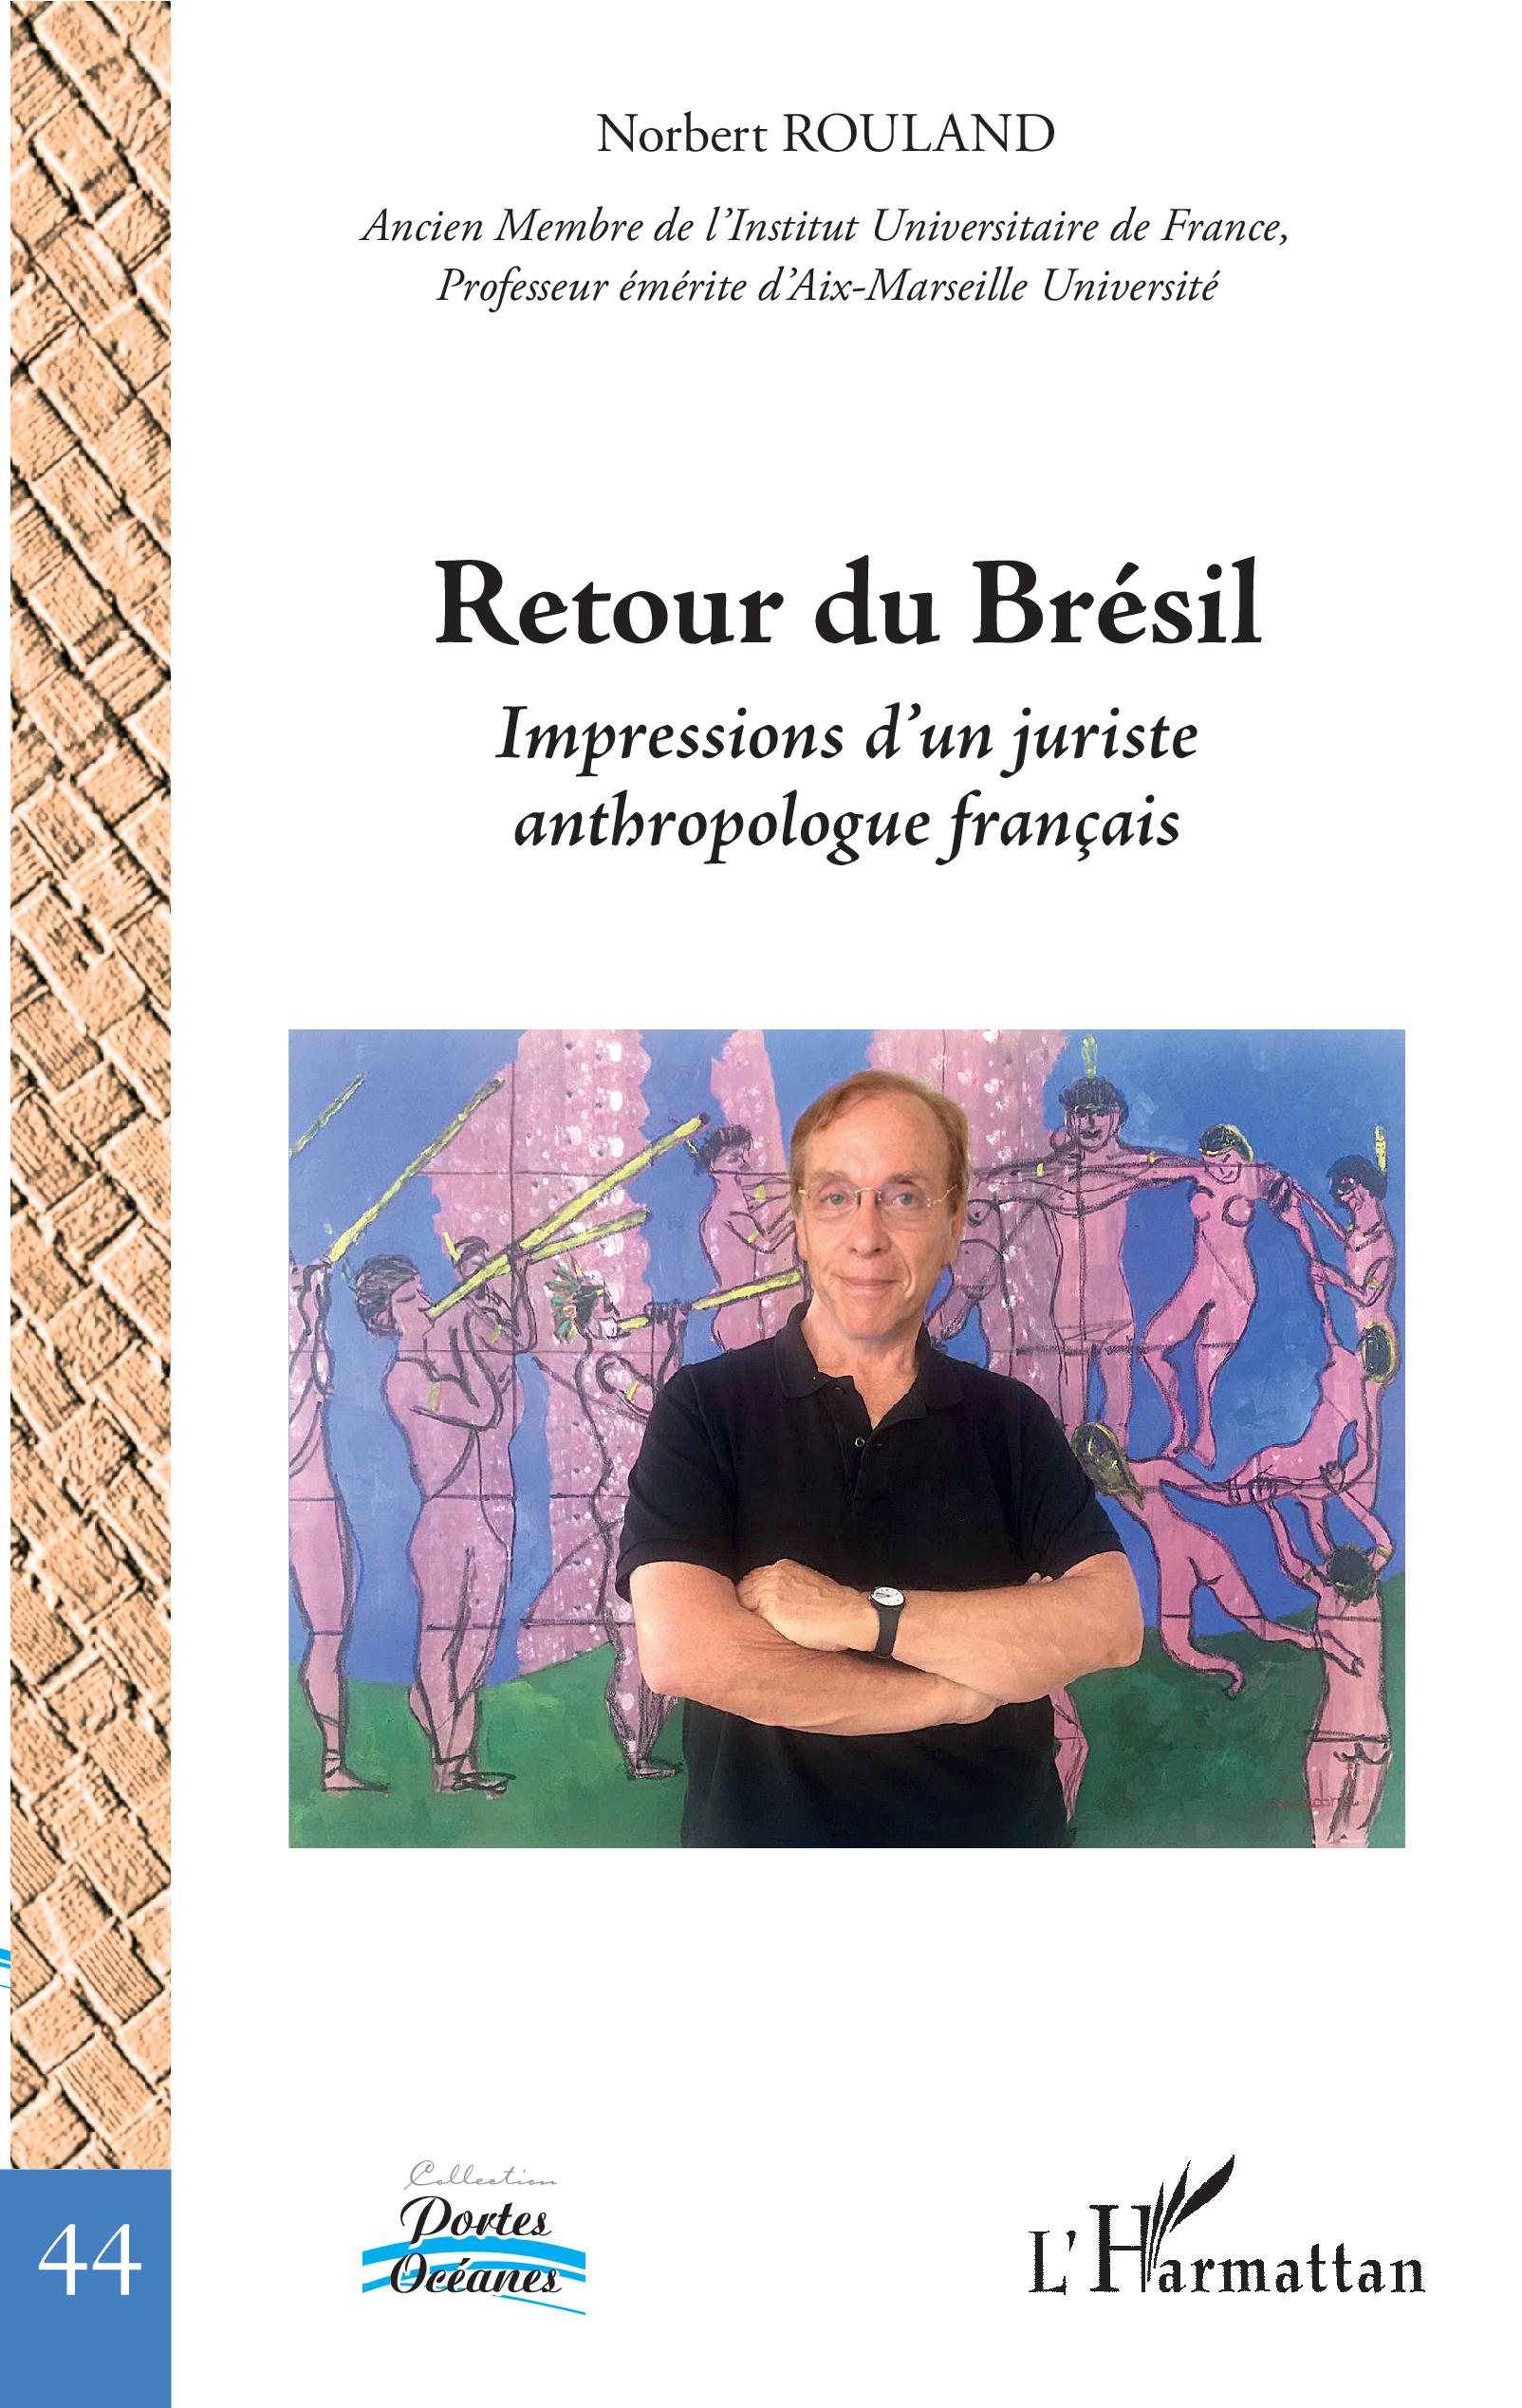 Norbert Rouland - Retour du Brésil